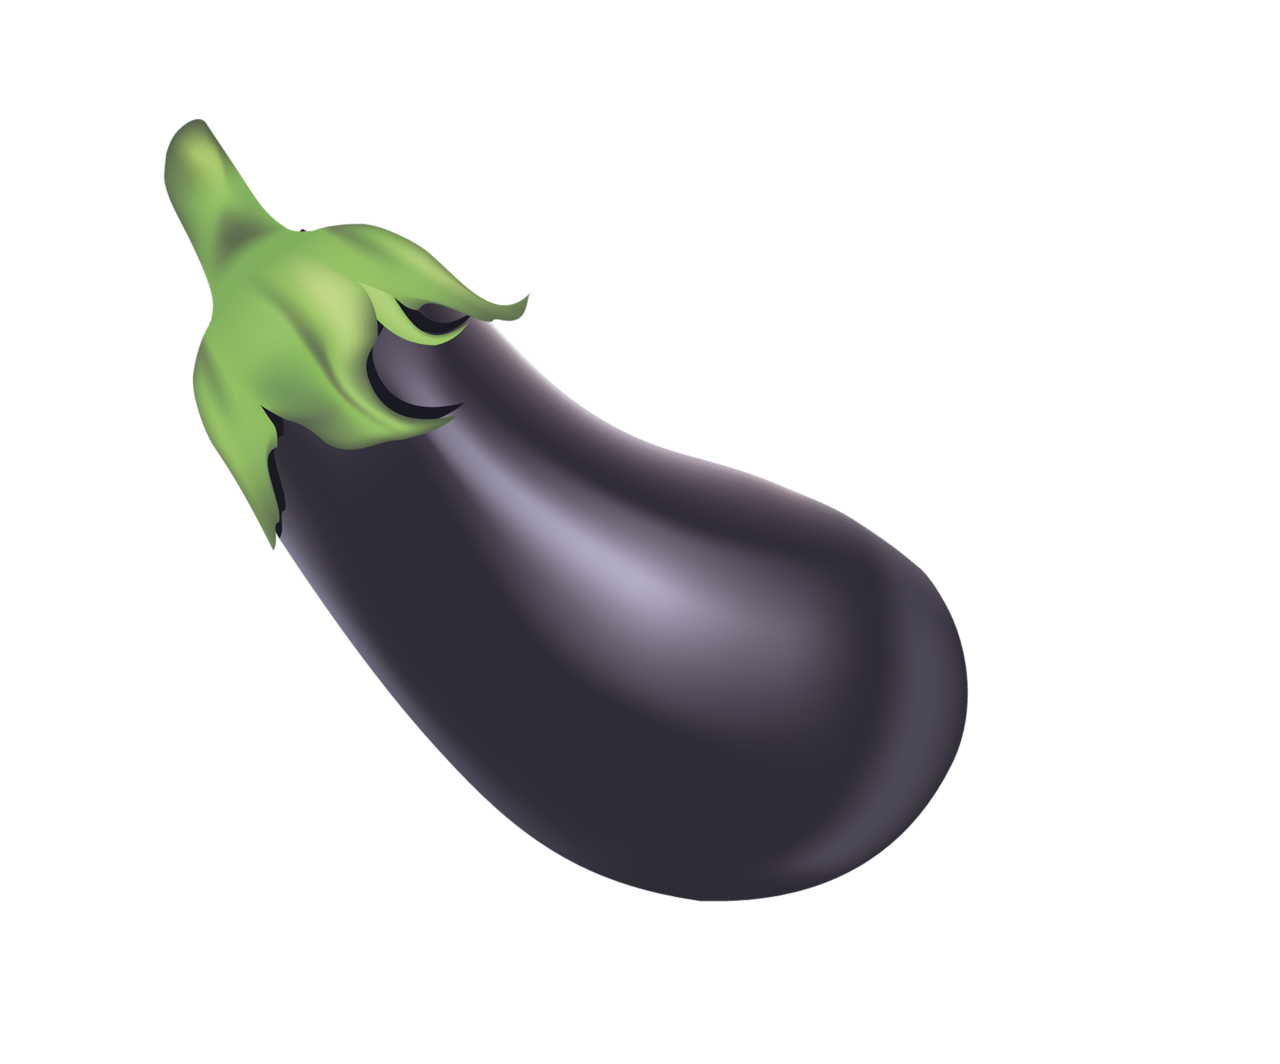 Single Brinjal Eggplant Free Download Image PNG Image